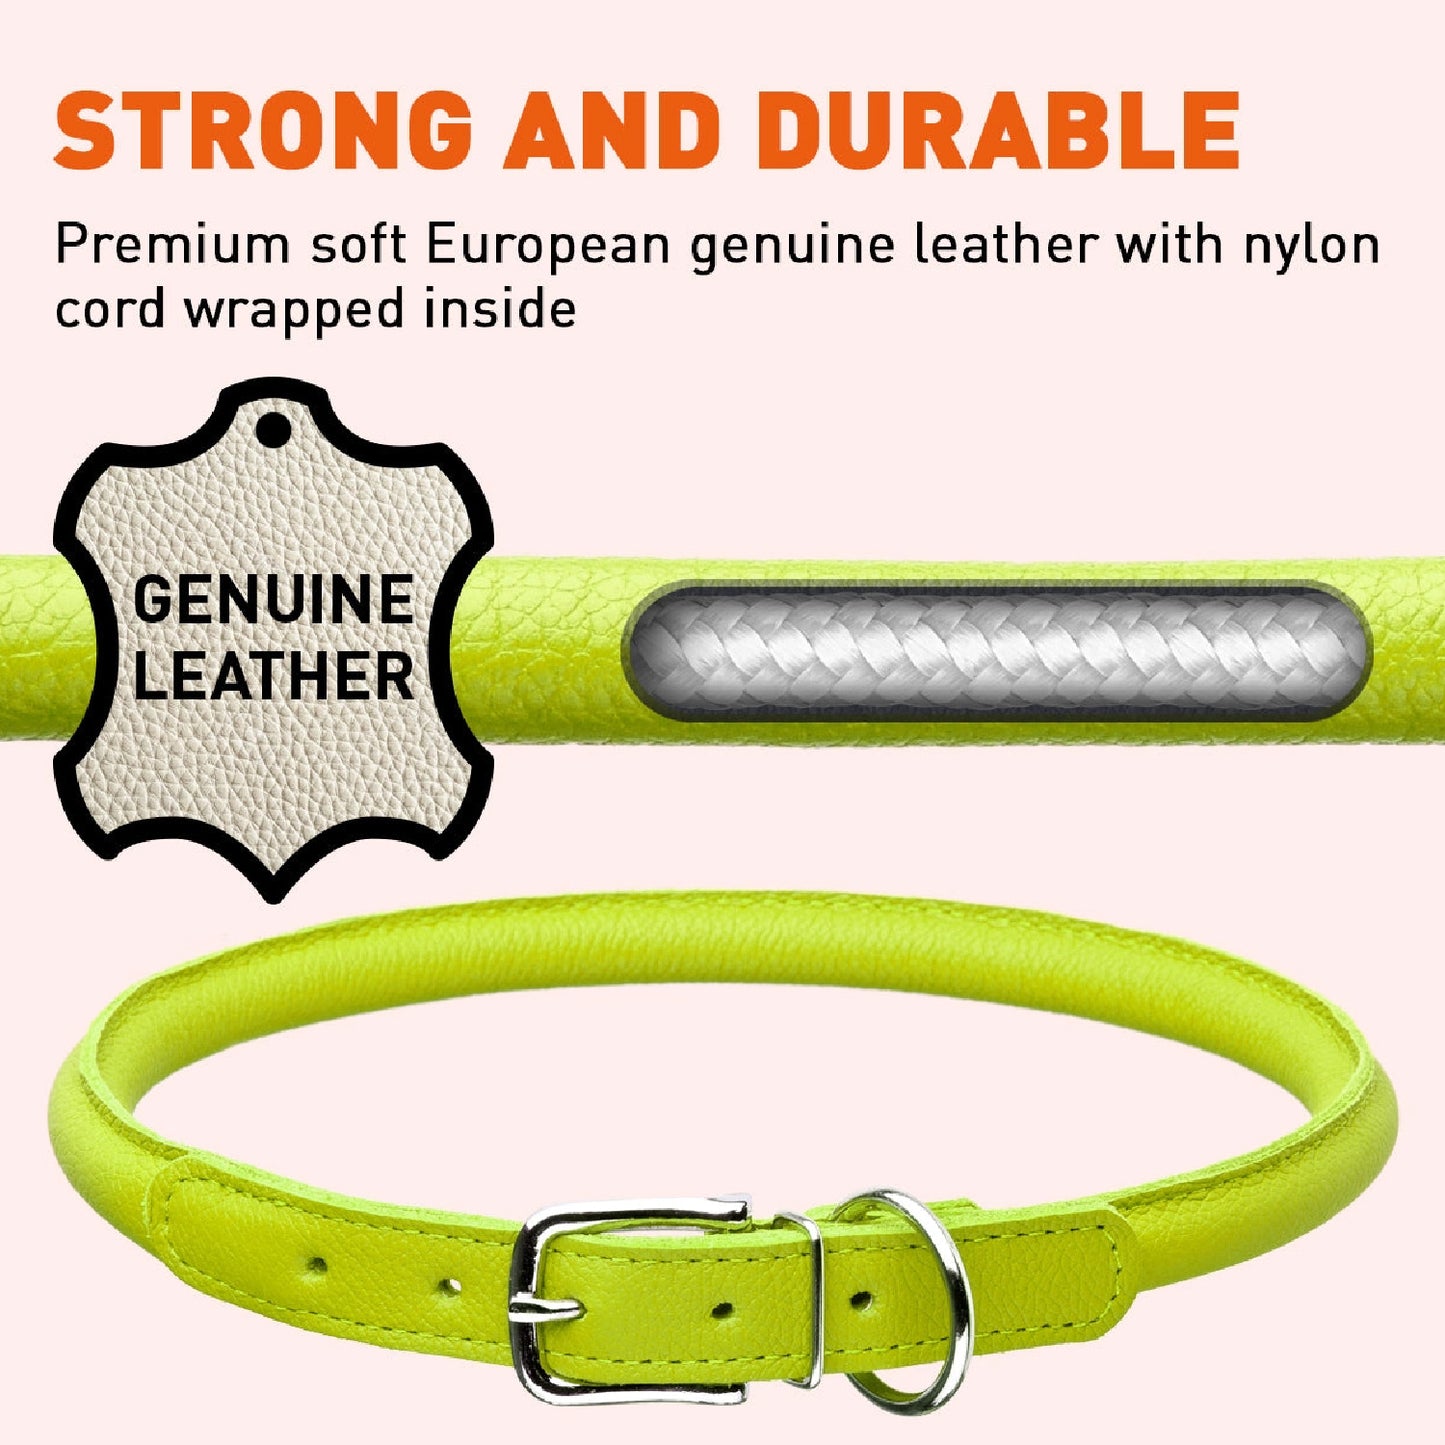 Round Leather Dog Collar by Dogline